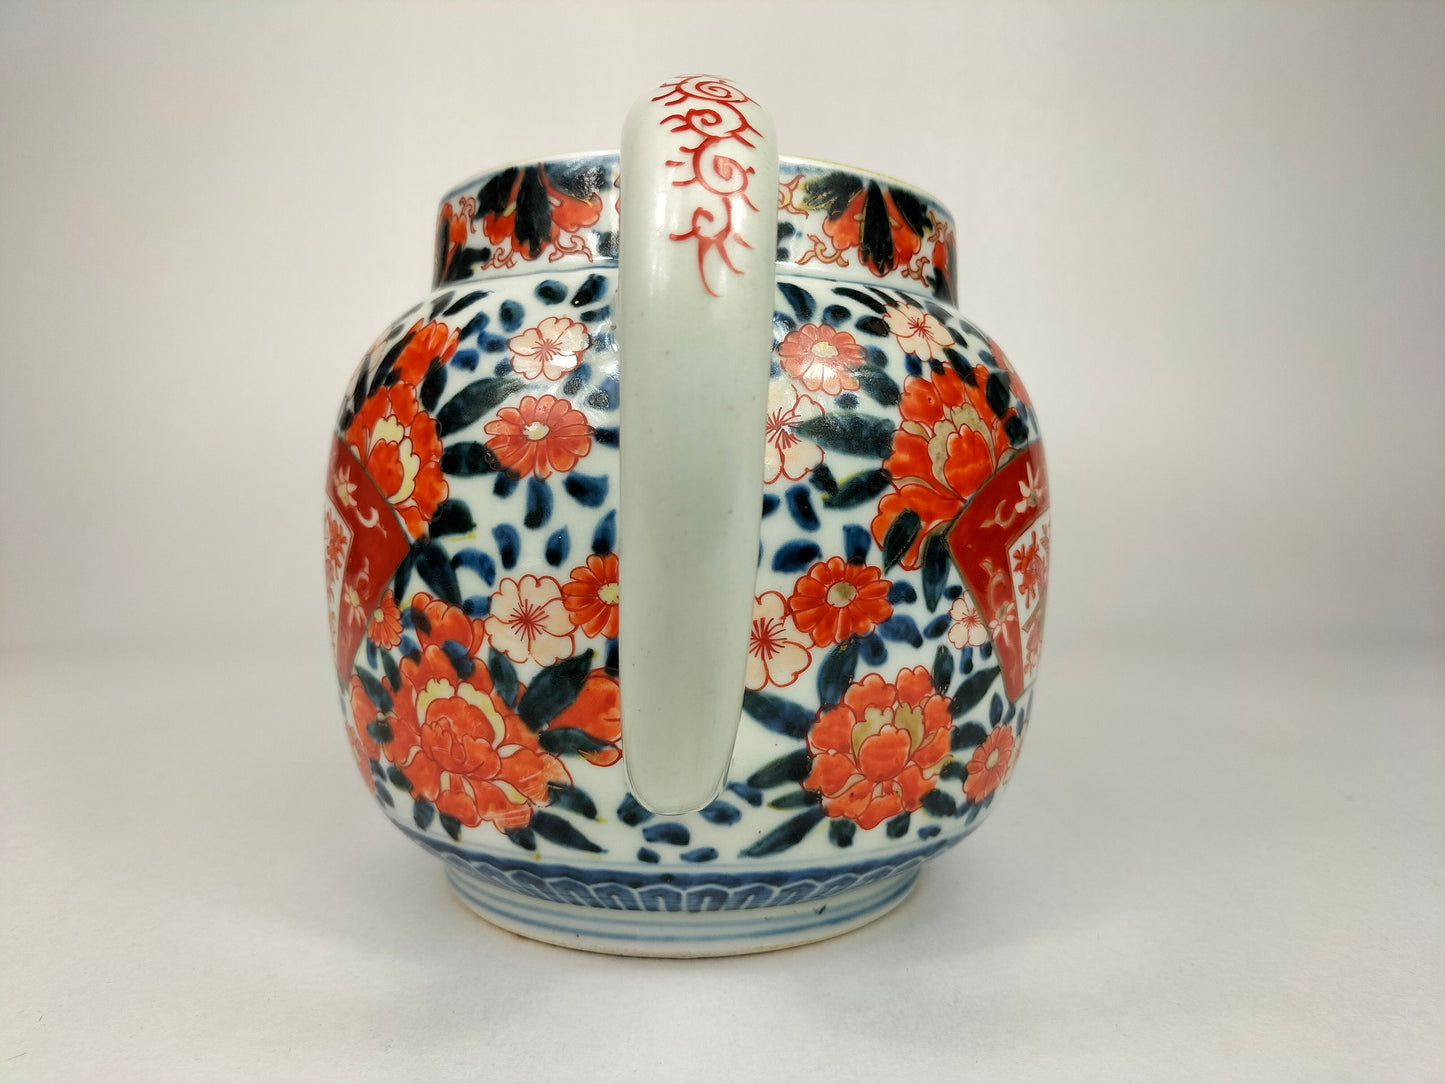 Grand pichet imari japonais ancien décoré de motifs floraux // Epoque Meiji - 19ème siècle